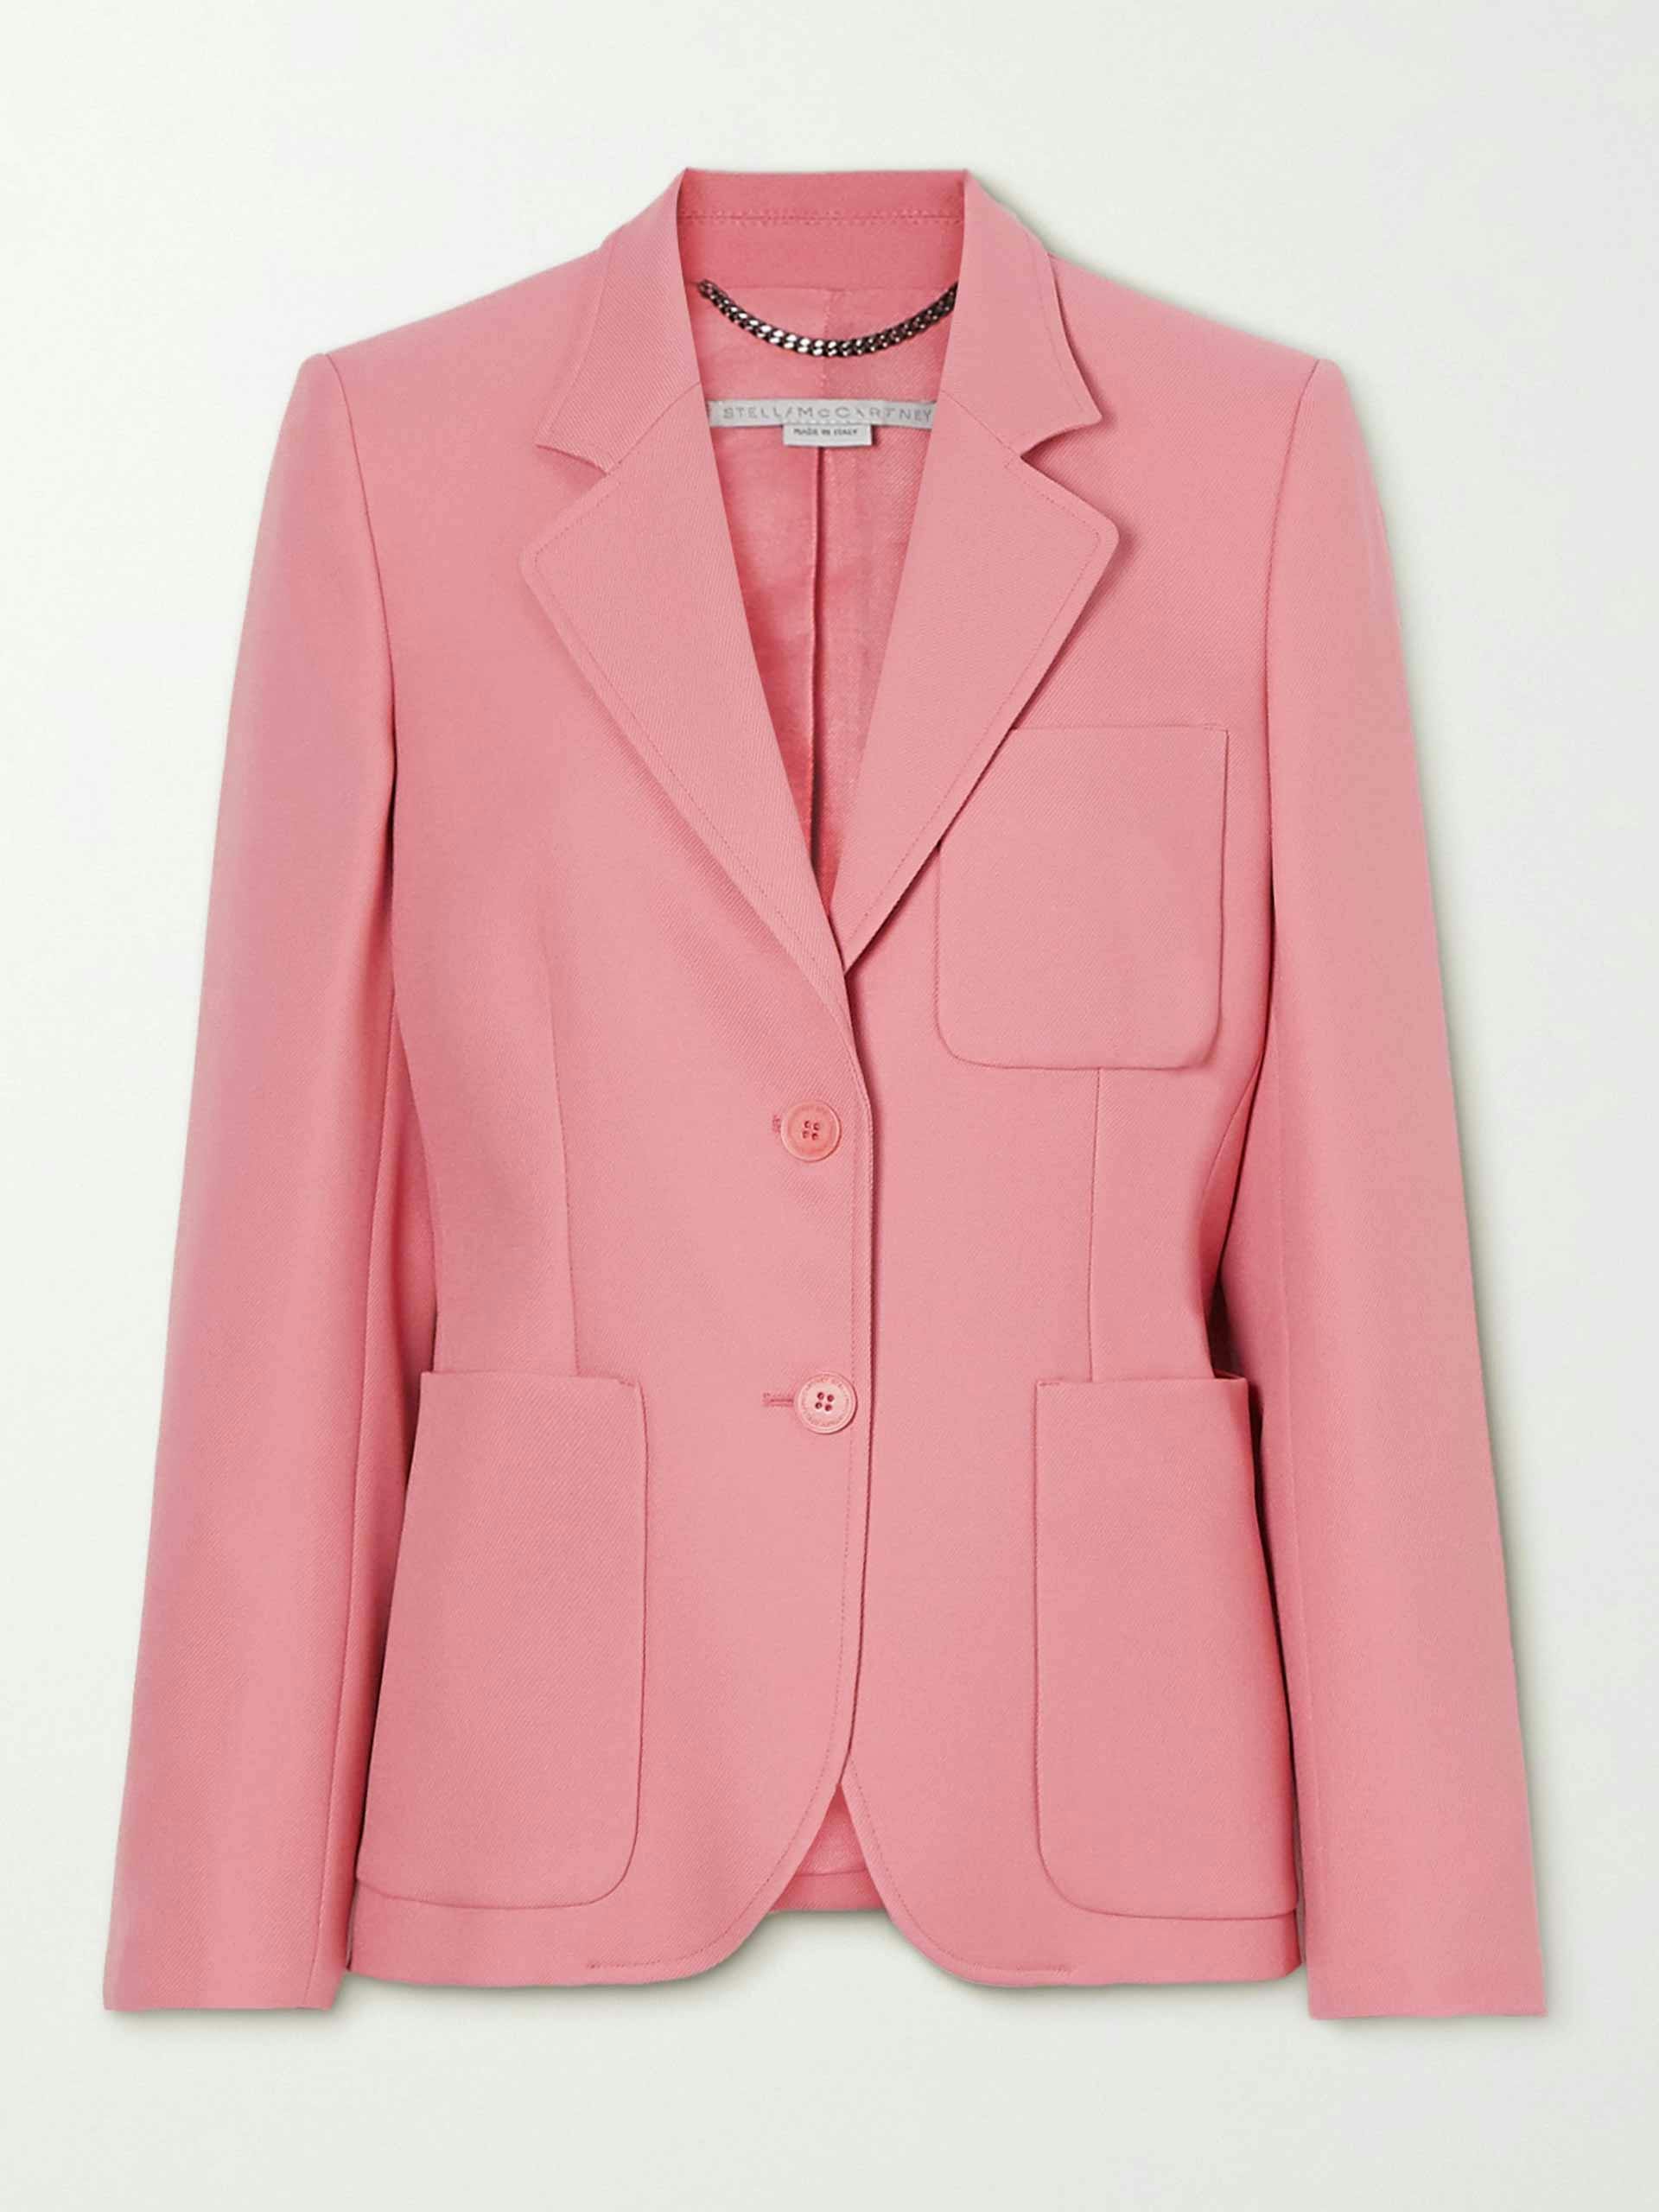 Pink twill blazer